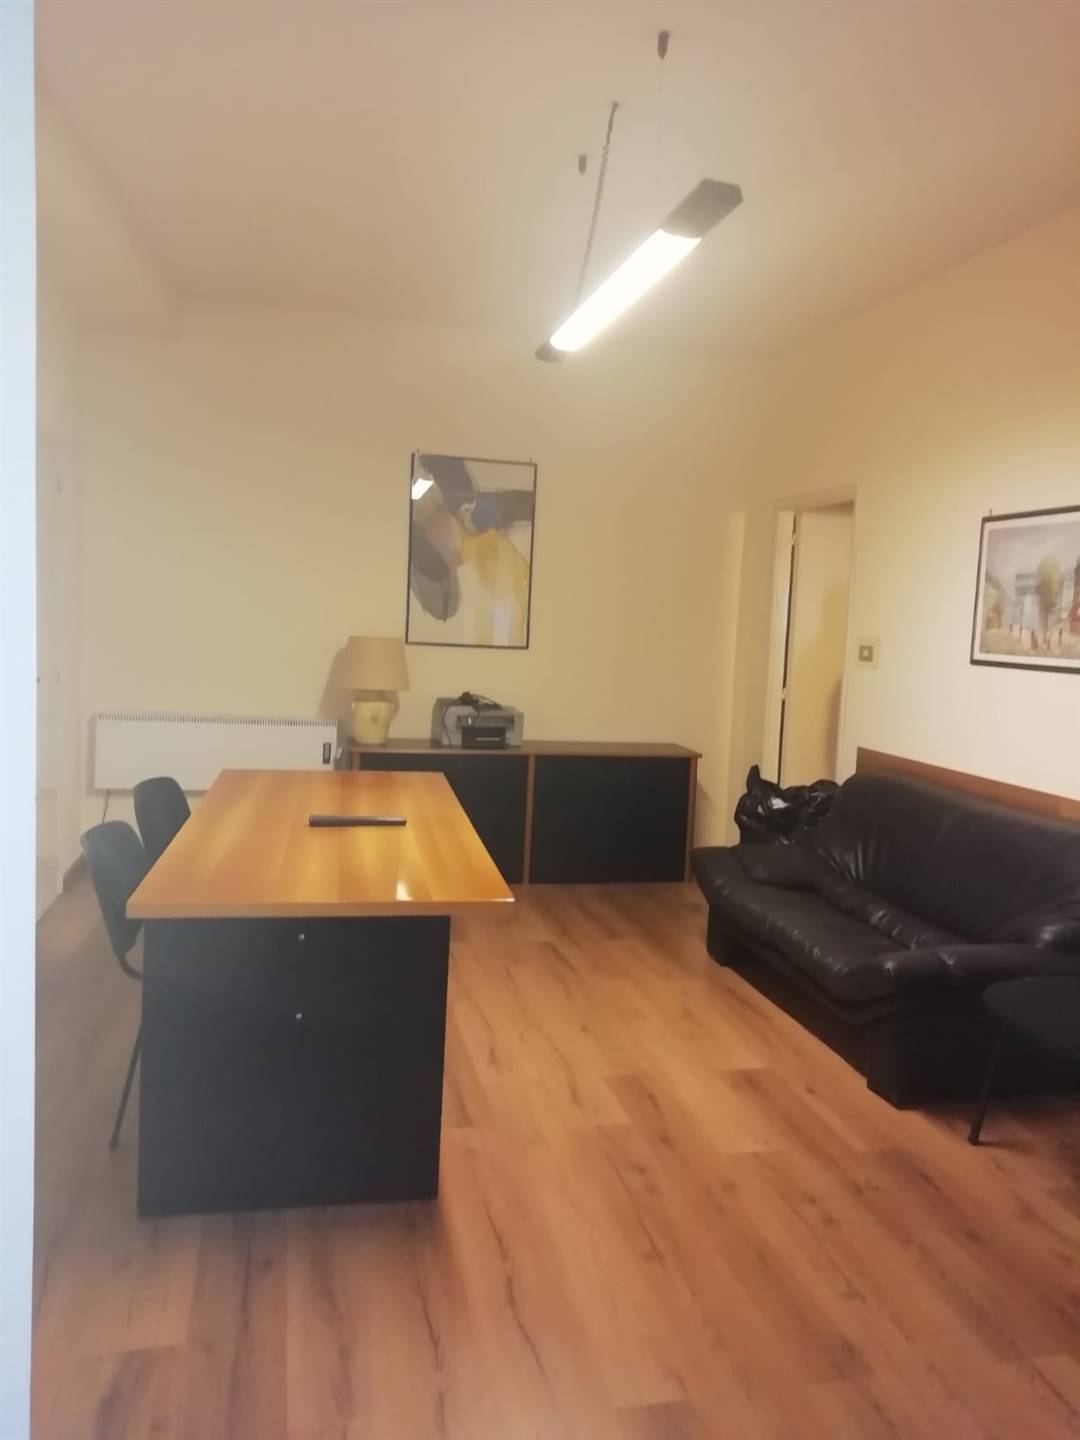 Appartamento in vendita a Nicolosi, 3 locali, prezzo € 80.000 | PortaleAgenzieImmobiliari.it